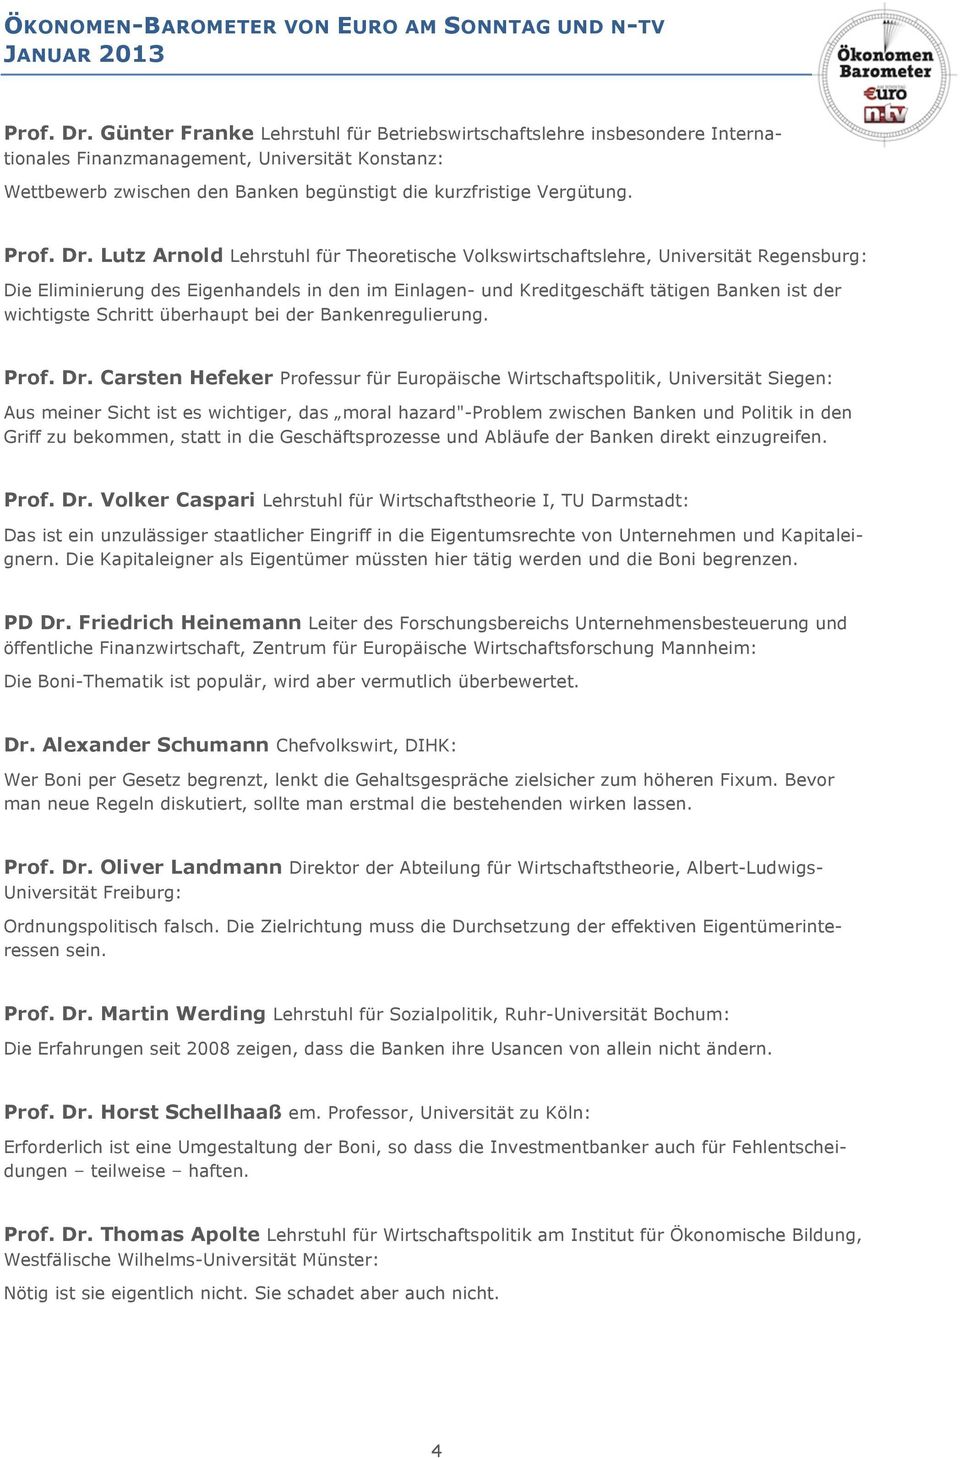 Lutz Arnold Lehrstuhl für Theoretische Volkswirtschaftslehre, Universität Regensburg: Die Eliminierung des Eigenhandels in den im Einlagen- und Kreditgeschäft tätigen Banken ist der wichtigste